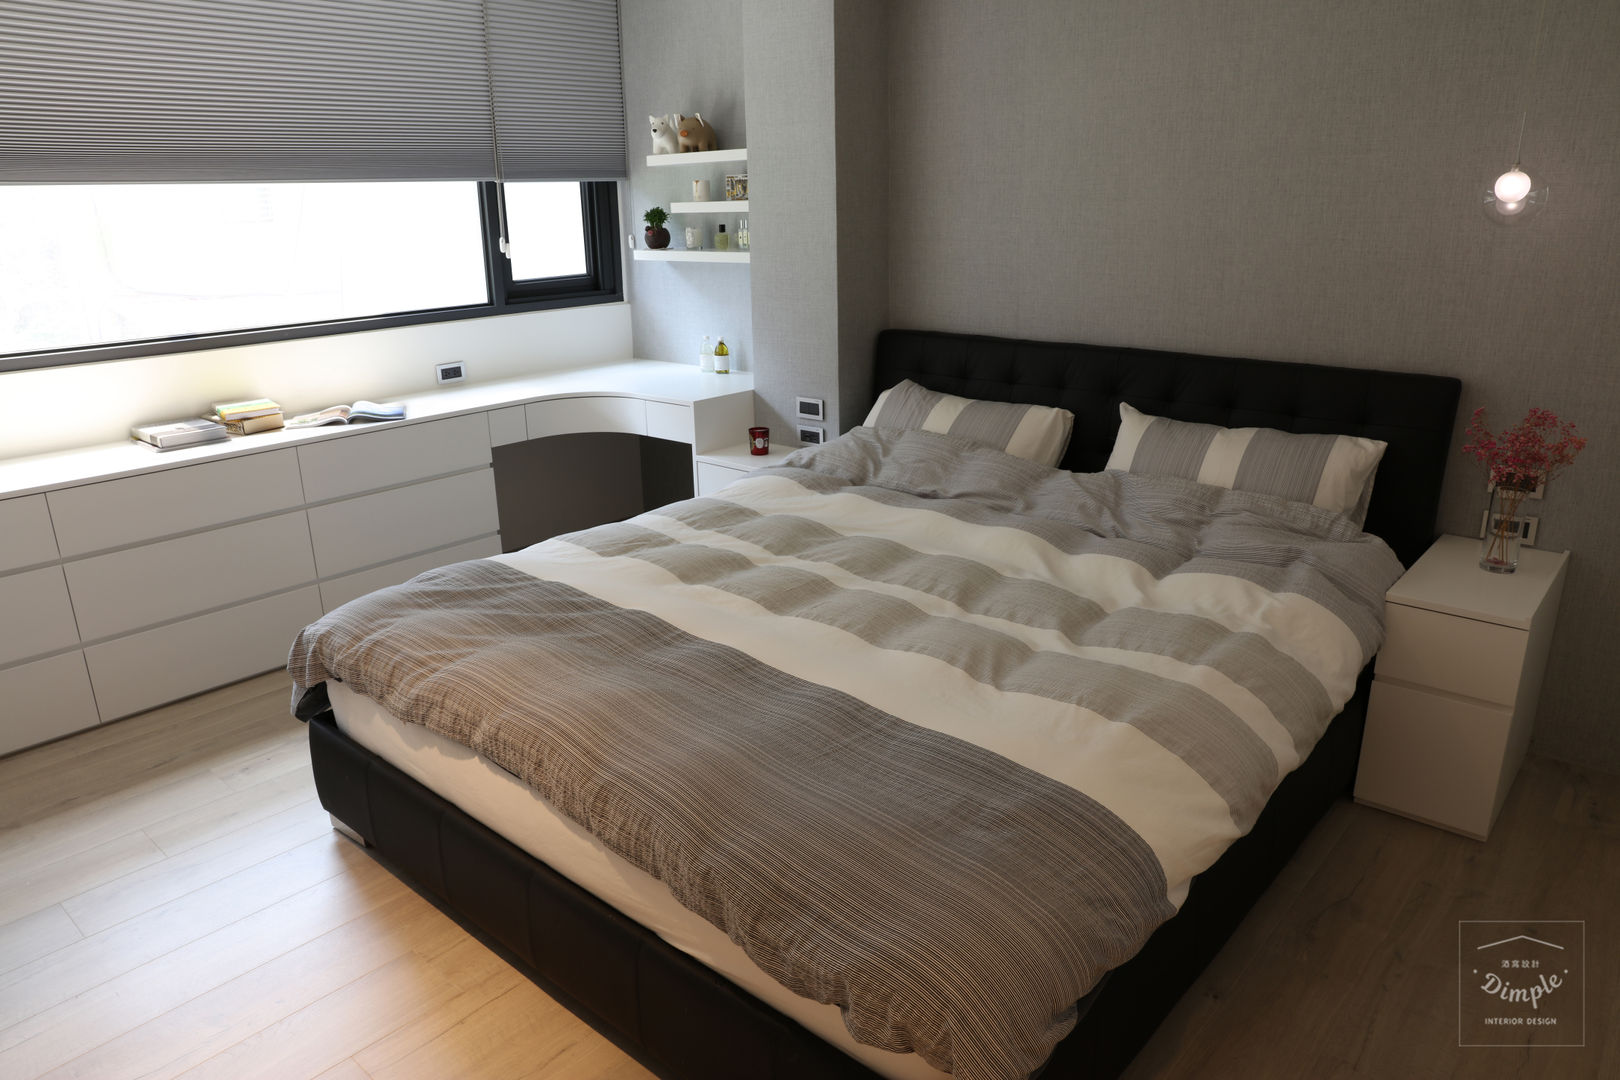 清晨的萊特-老屋翻新變身現代簡約居所, 酒窩設計有限公司 Dimple Interior Design 酒窩設計有限公司 Dimple Interior Design Modern style bedroom Wood-Plastic Composite